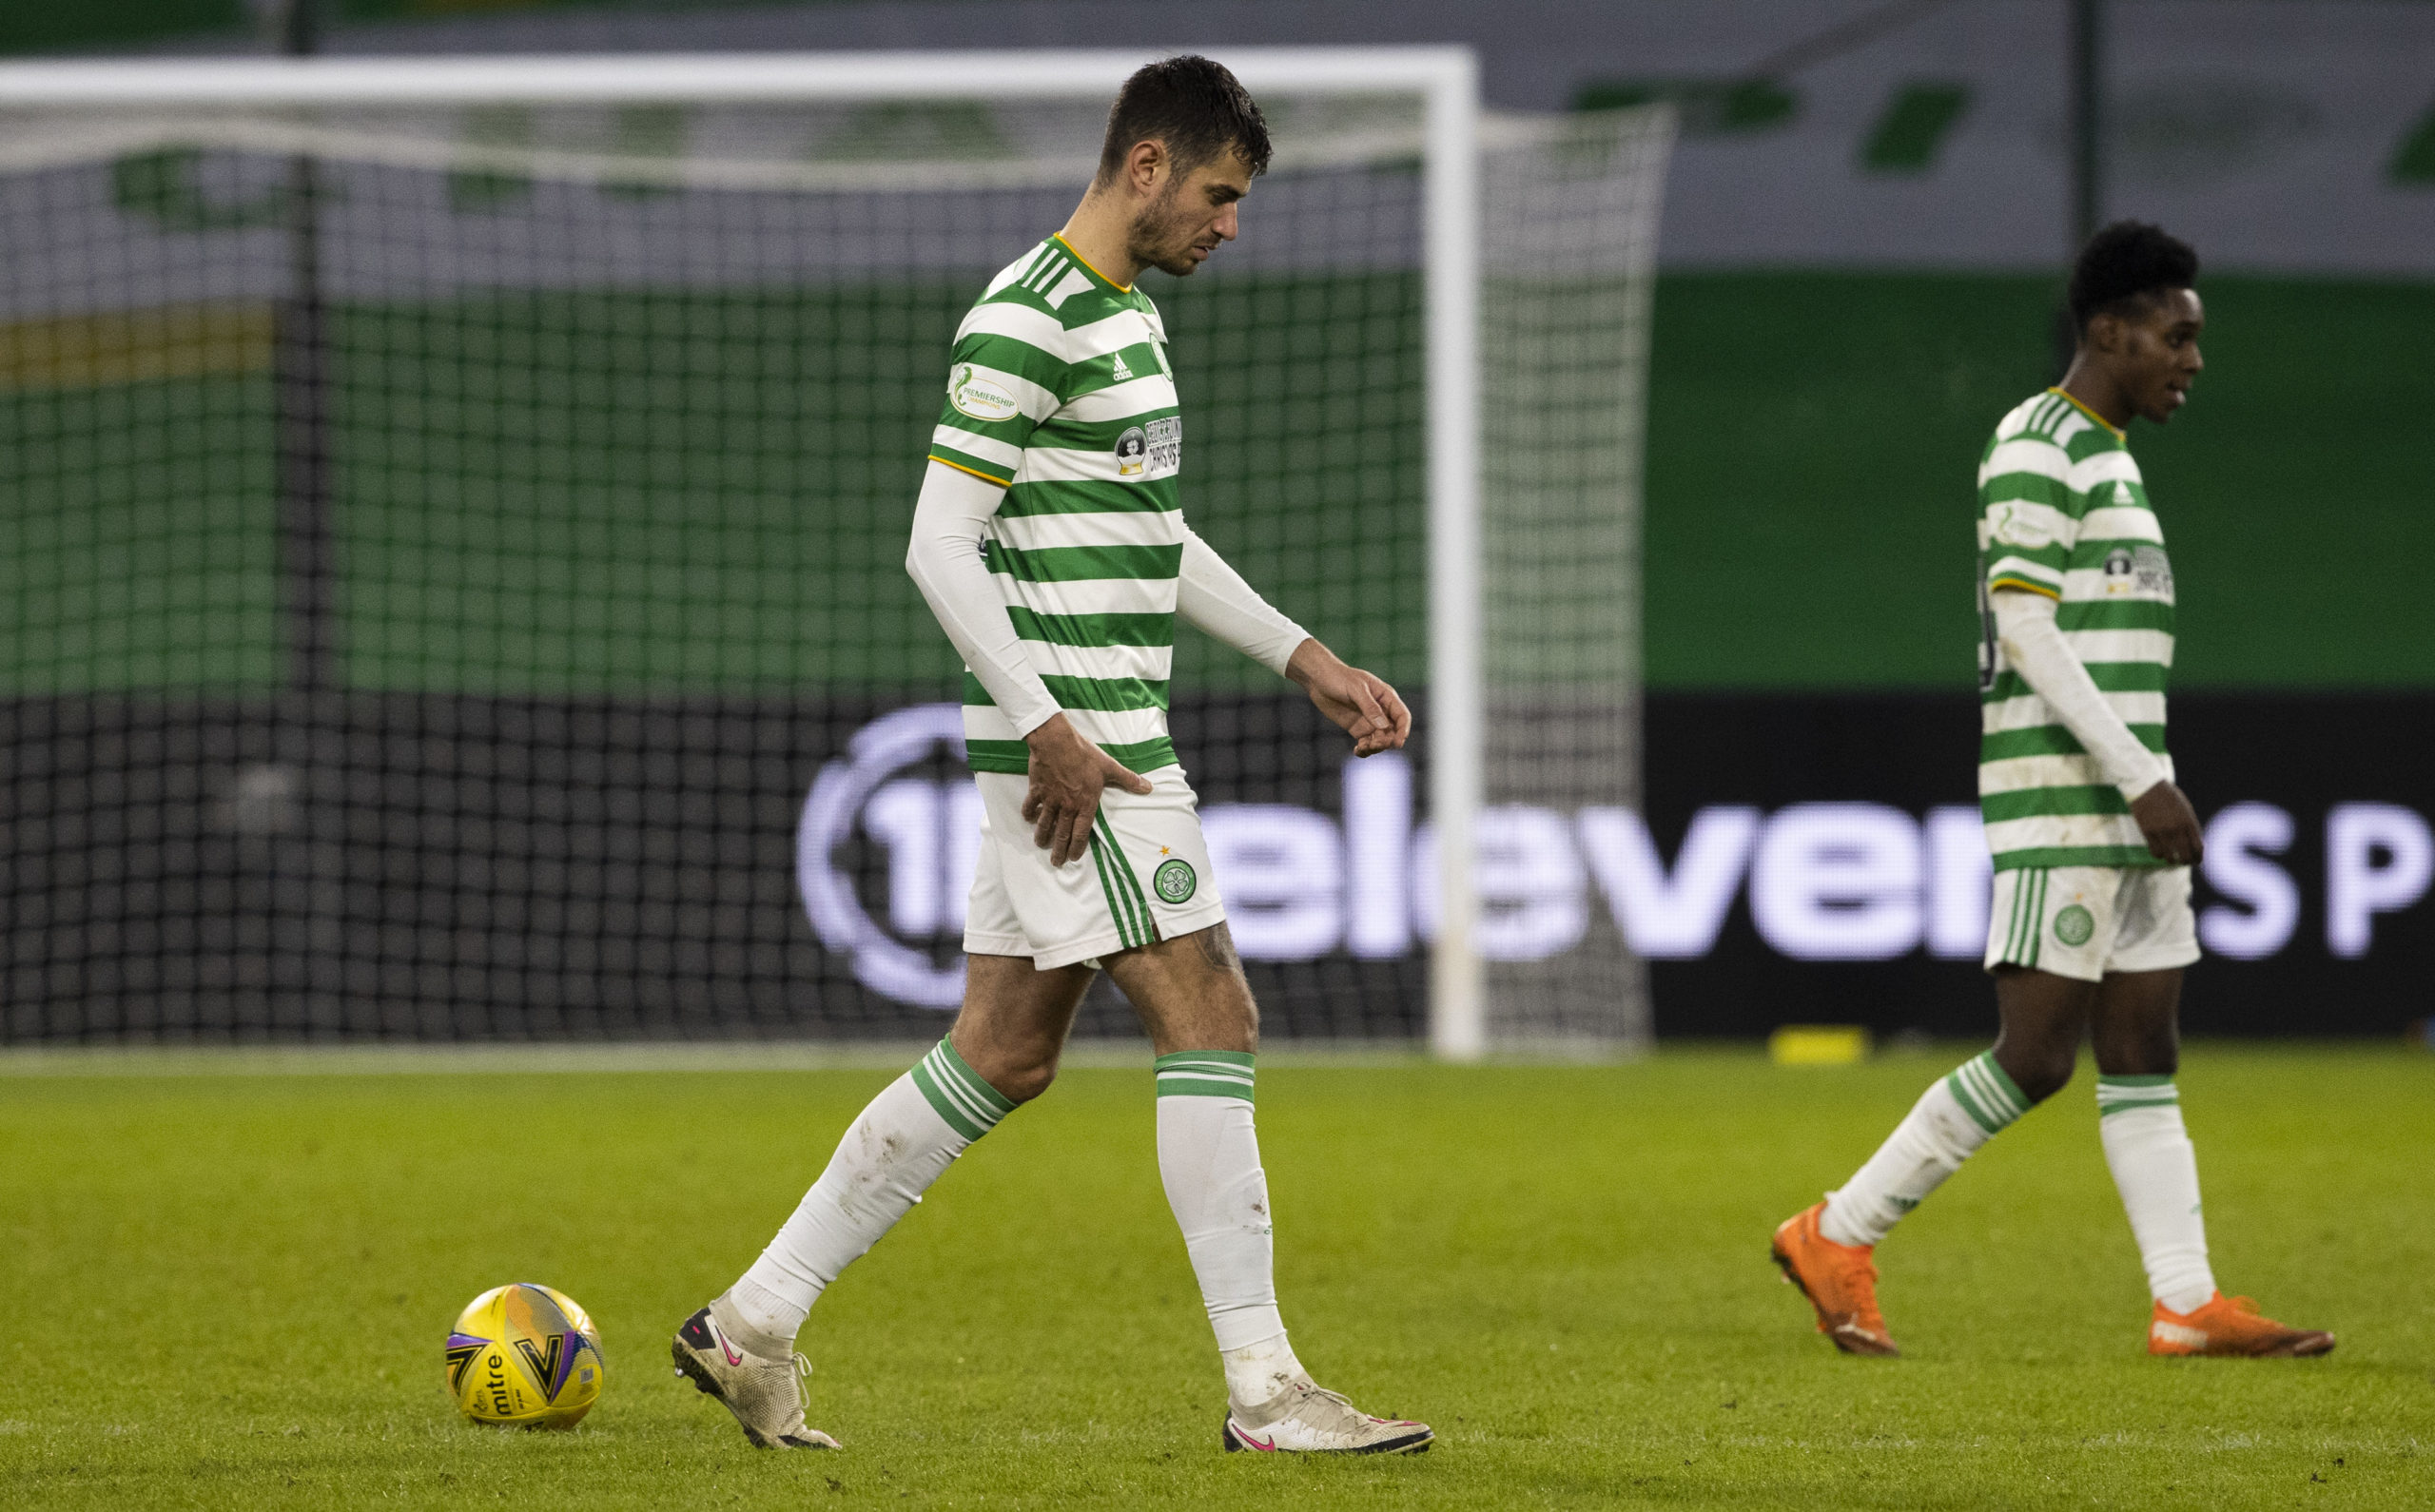 Celtic defender Nir Bitton is struggling for form